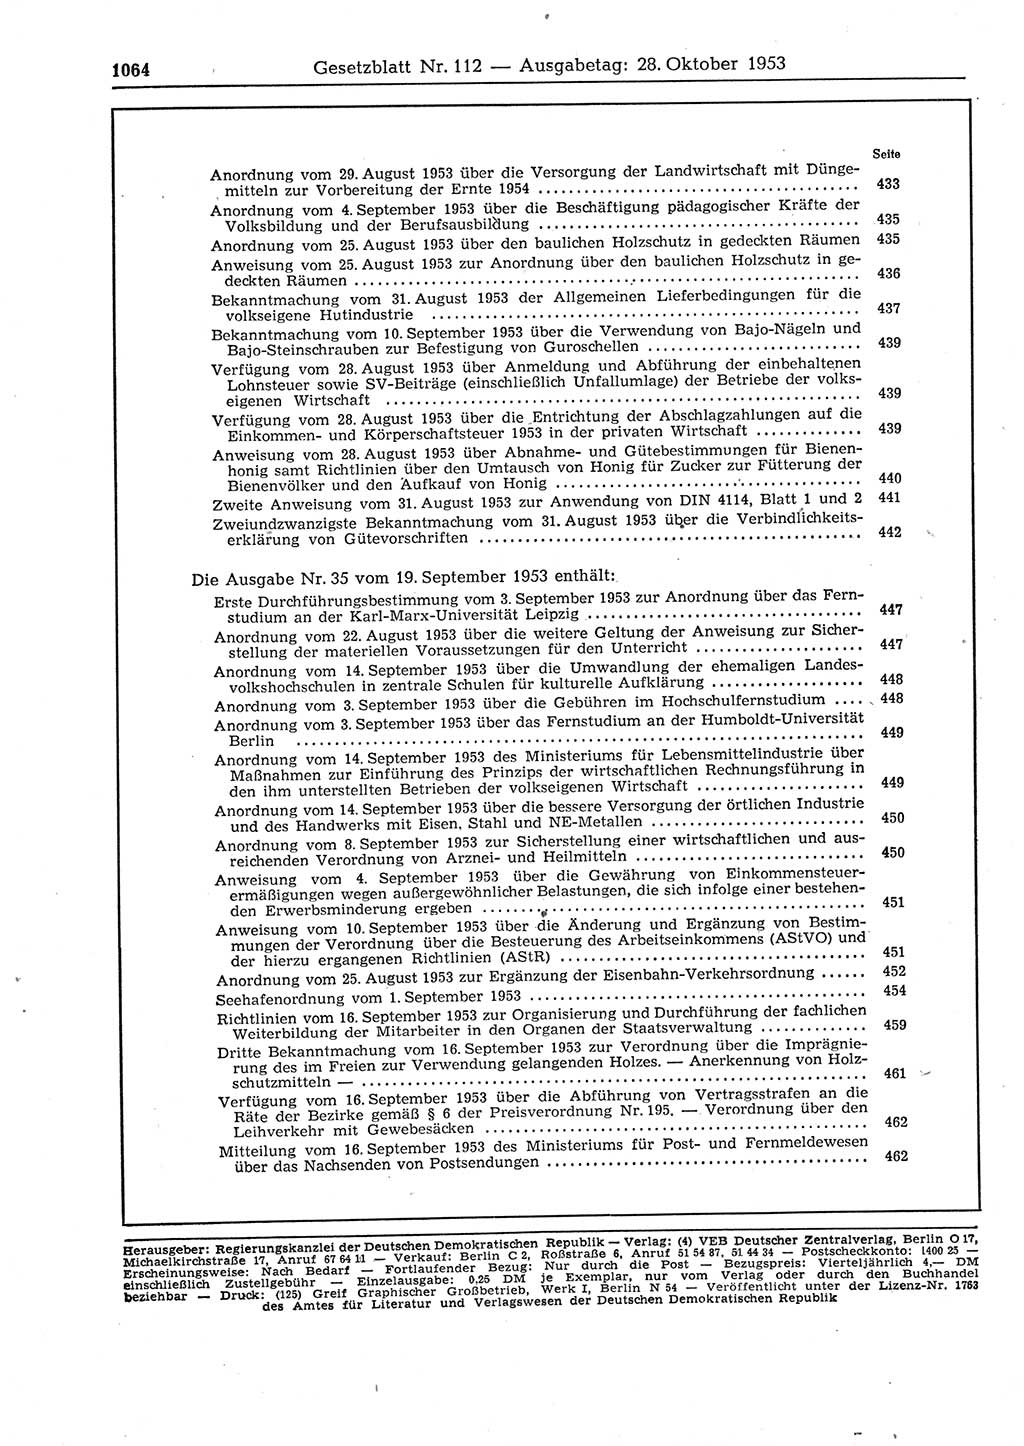 Gesetzblatt (GBl.) der Deutschen Demokratischen Republik (DDR) 1953, Seite 1064 (GBl. DDR 1953, S. 1064)